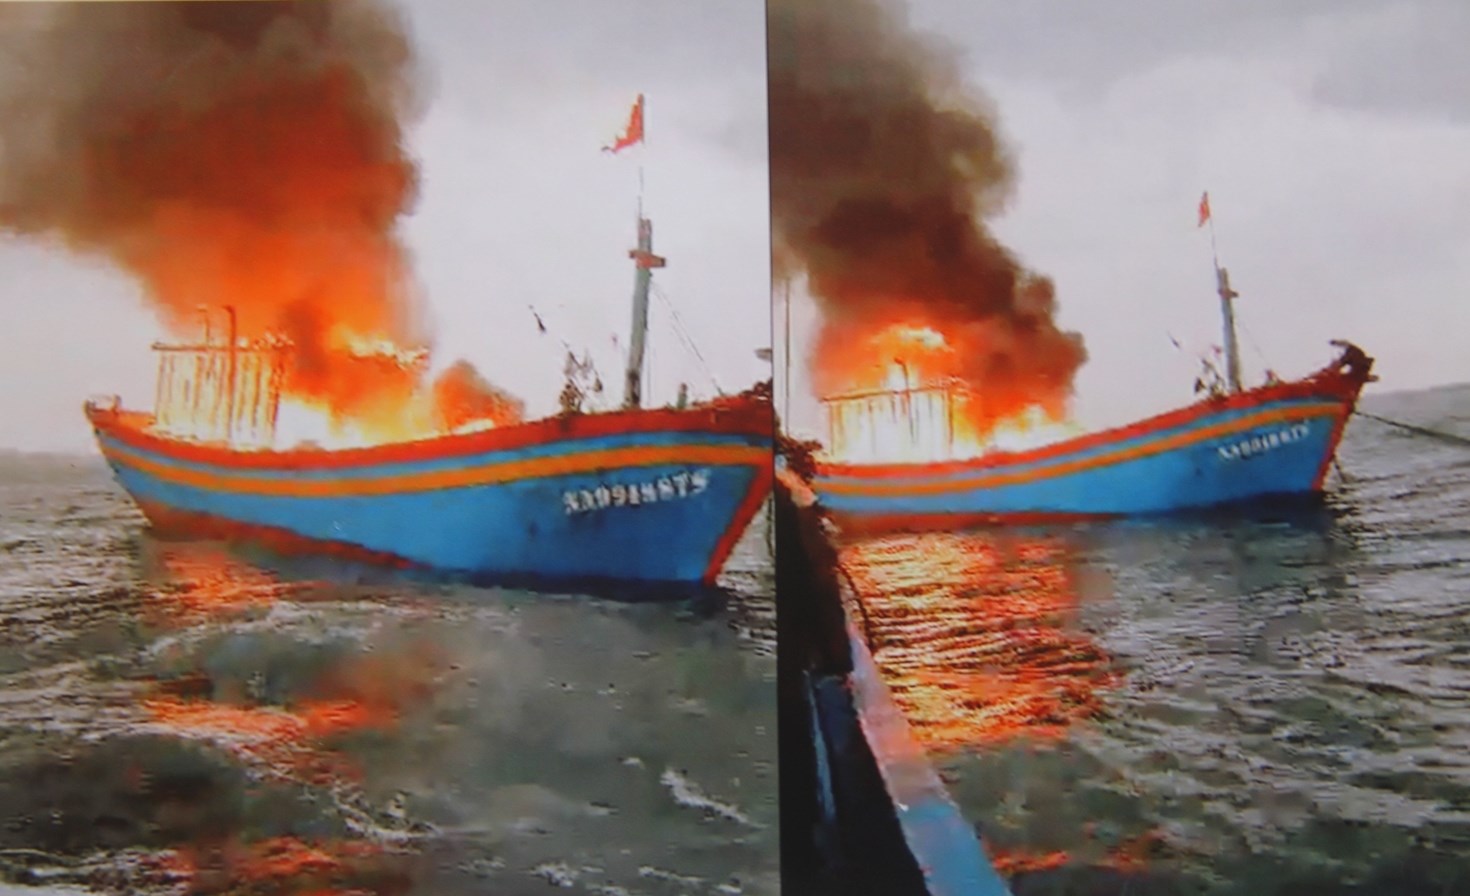 Tàu cá của ông Hoàng Văn Quyết bị cháy trên biển (Ảnh do ngư dân cung cấp)